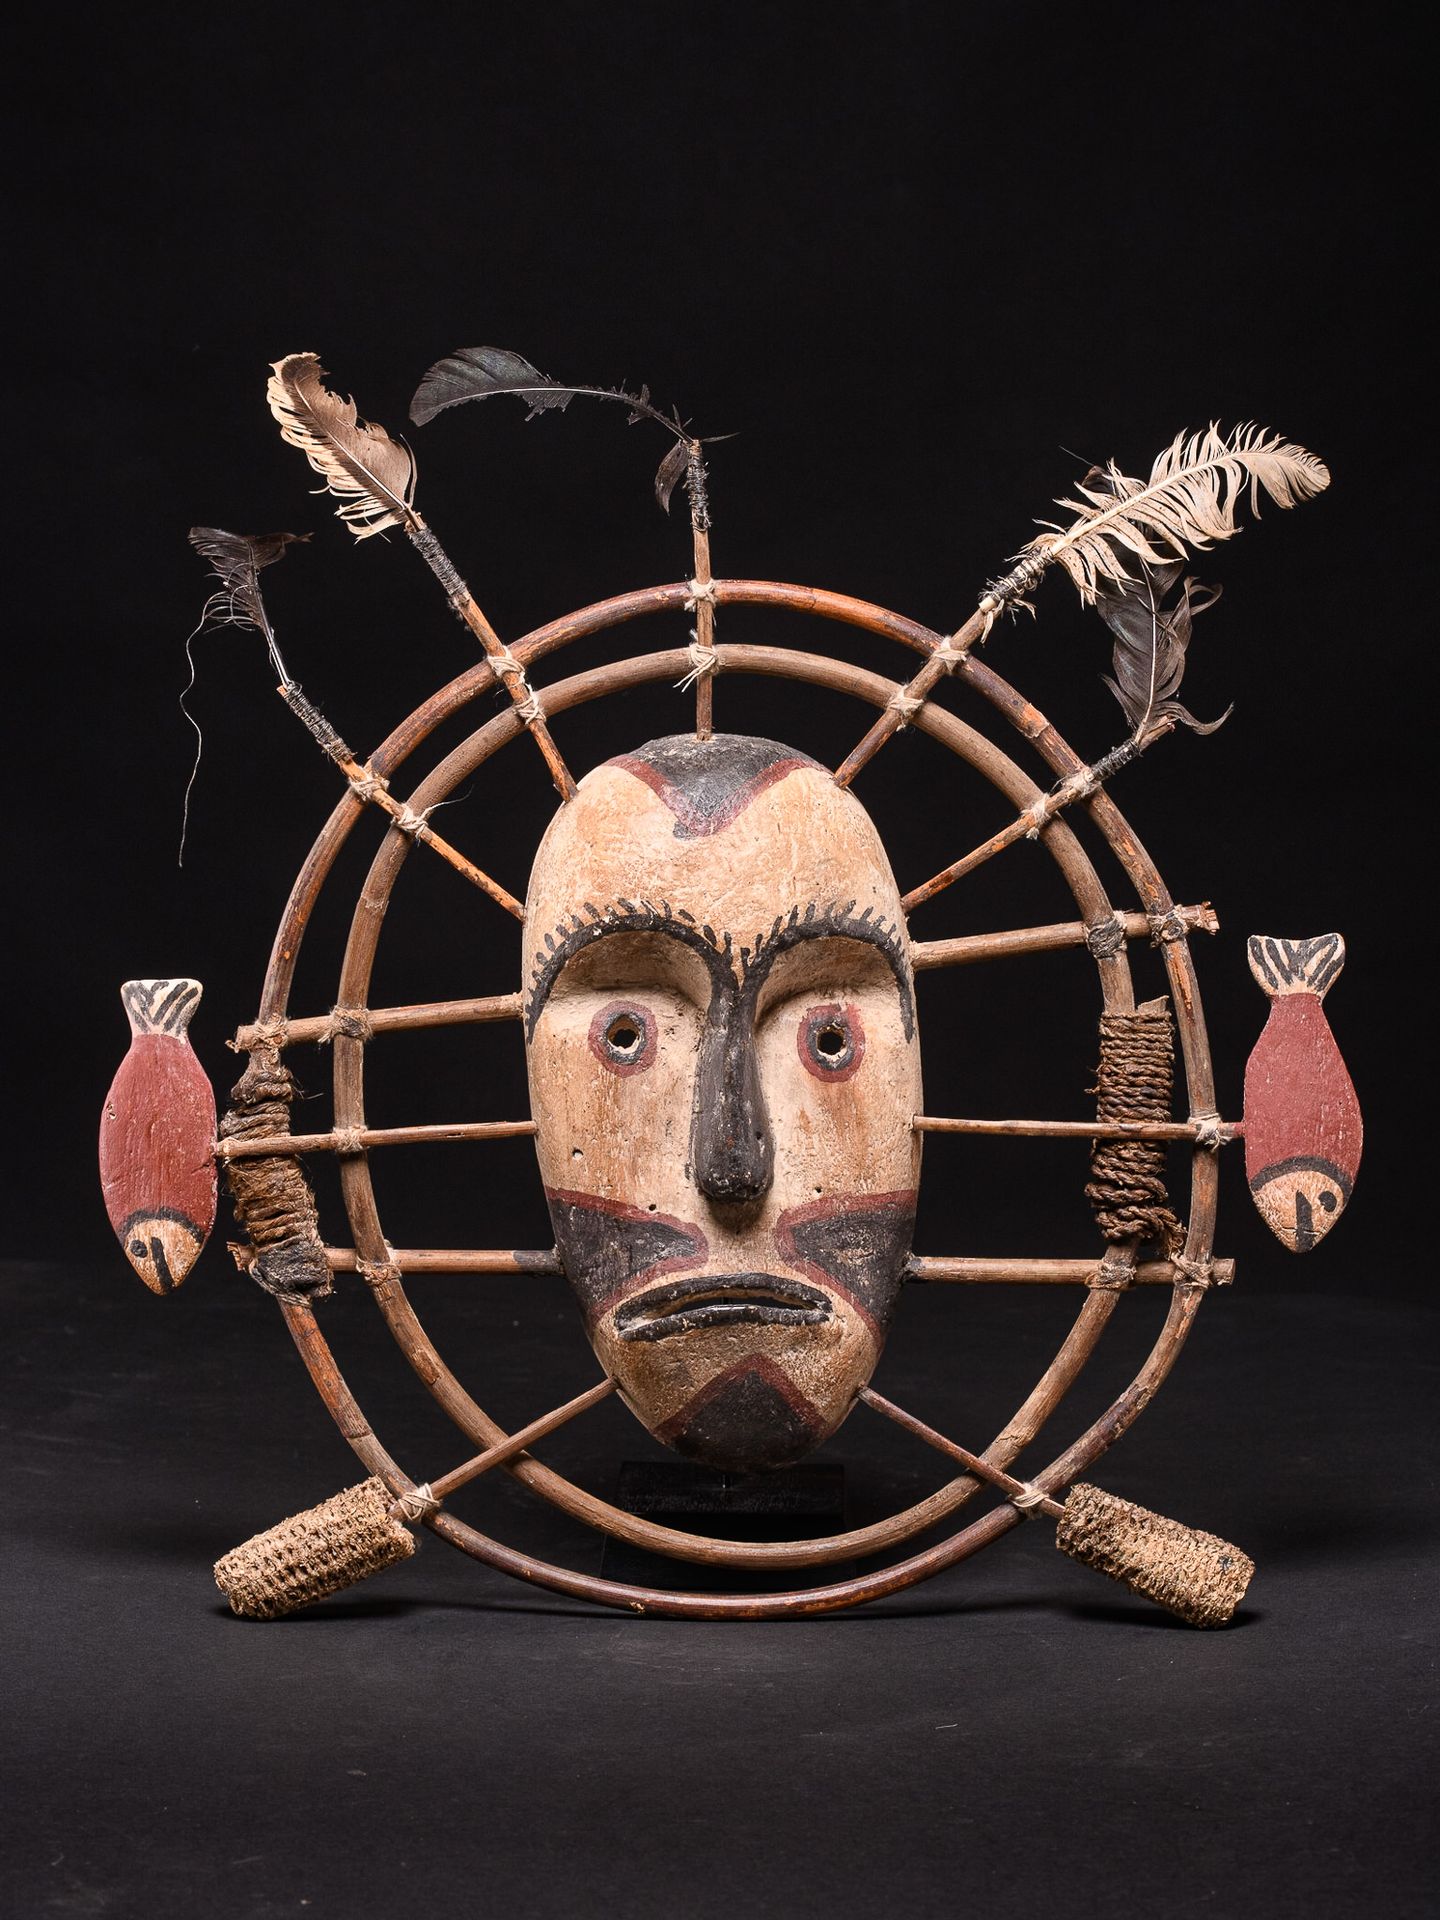 Peuple inuit Máscara inuit, plumas, madera, pigmento - (amerindio) - 35x32cm